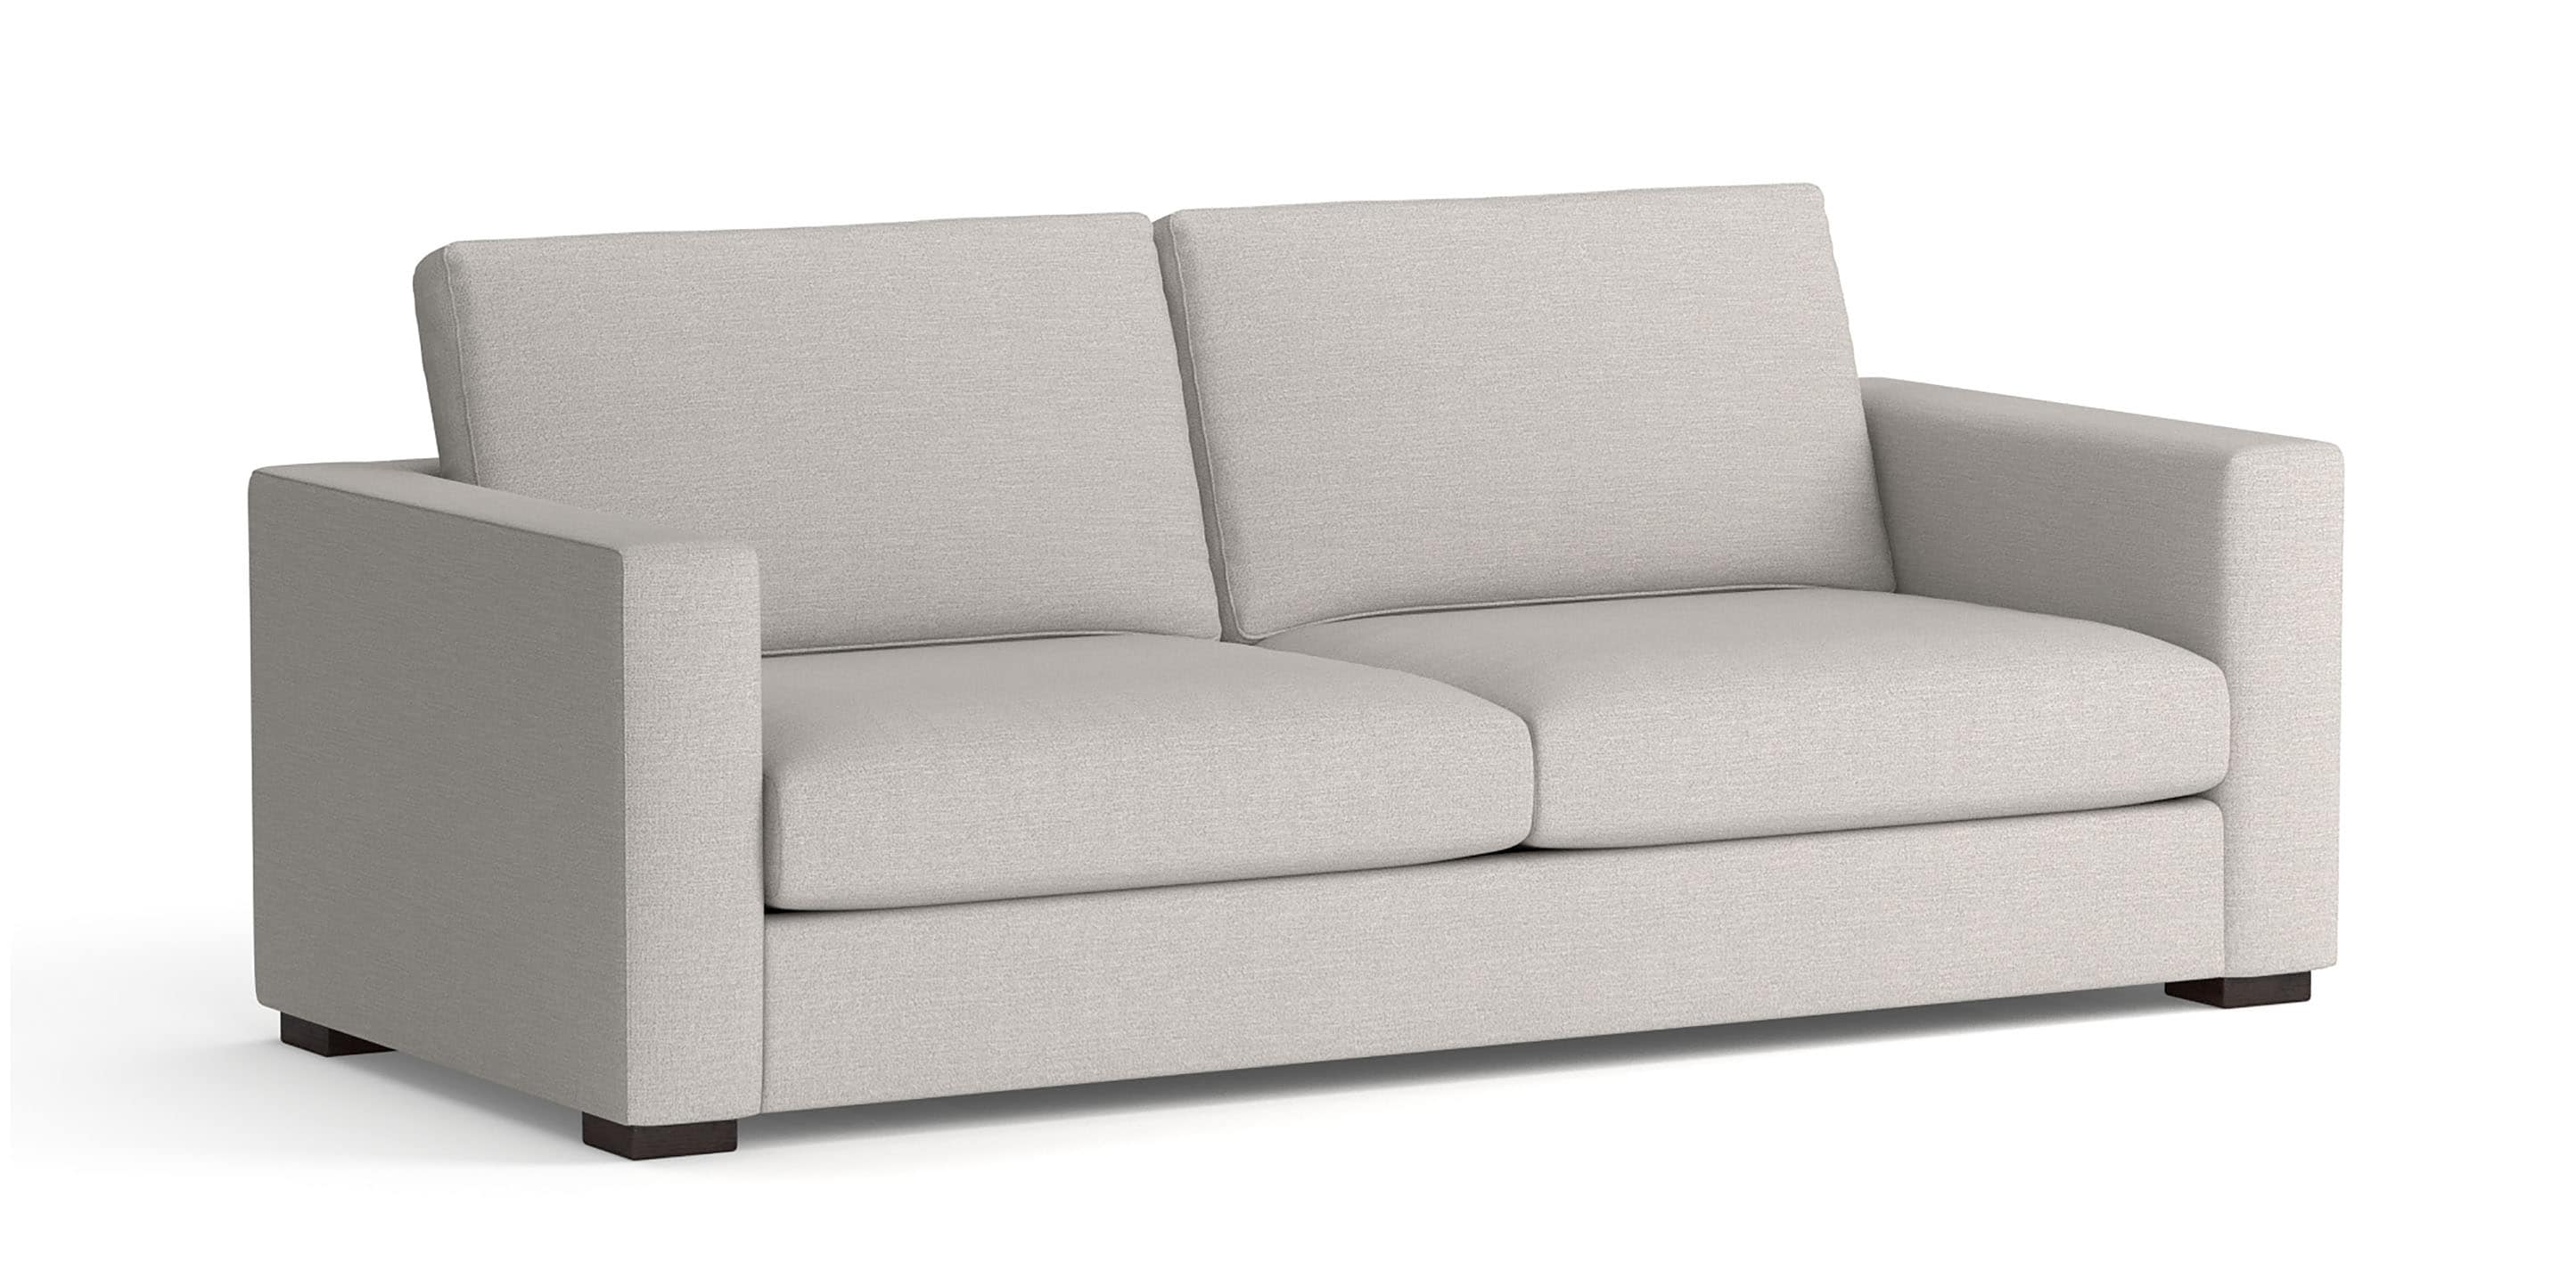 Weldon Sofa